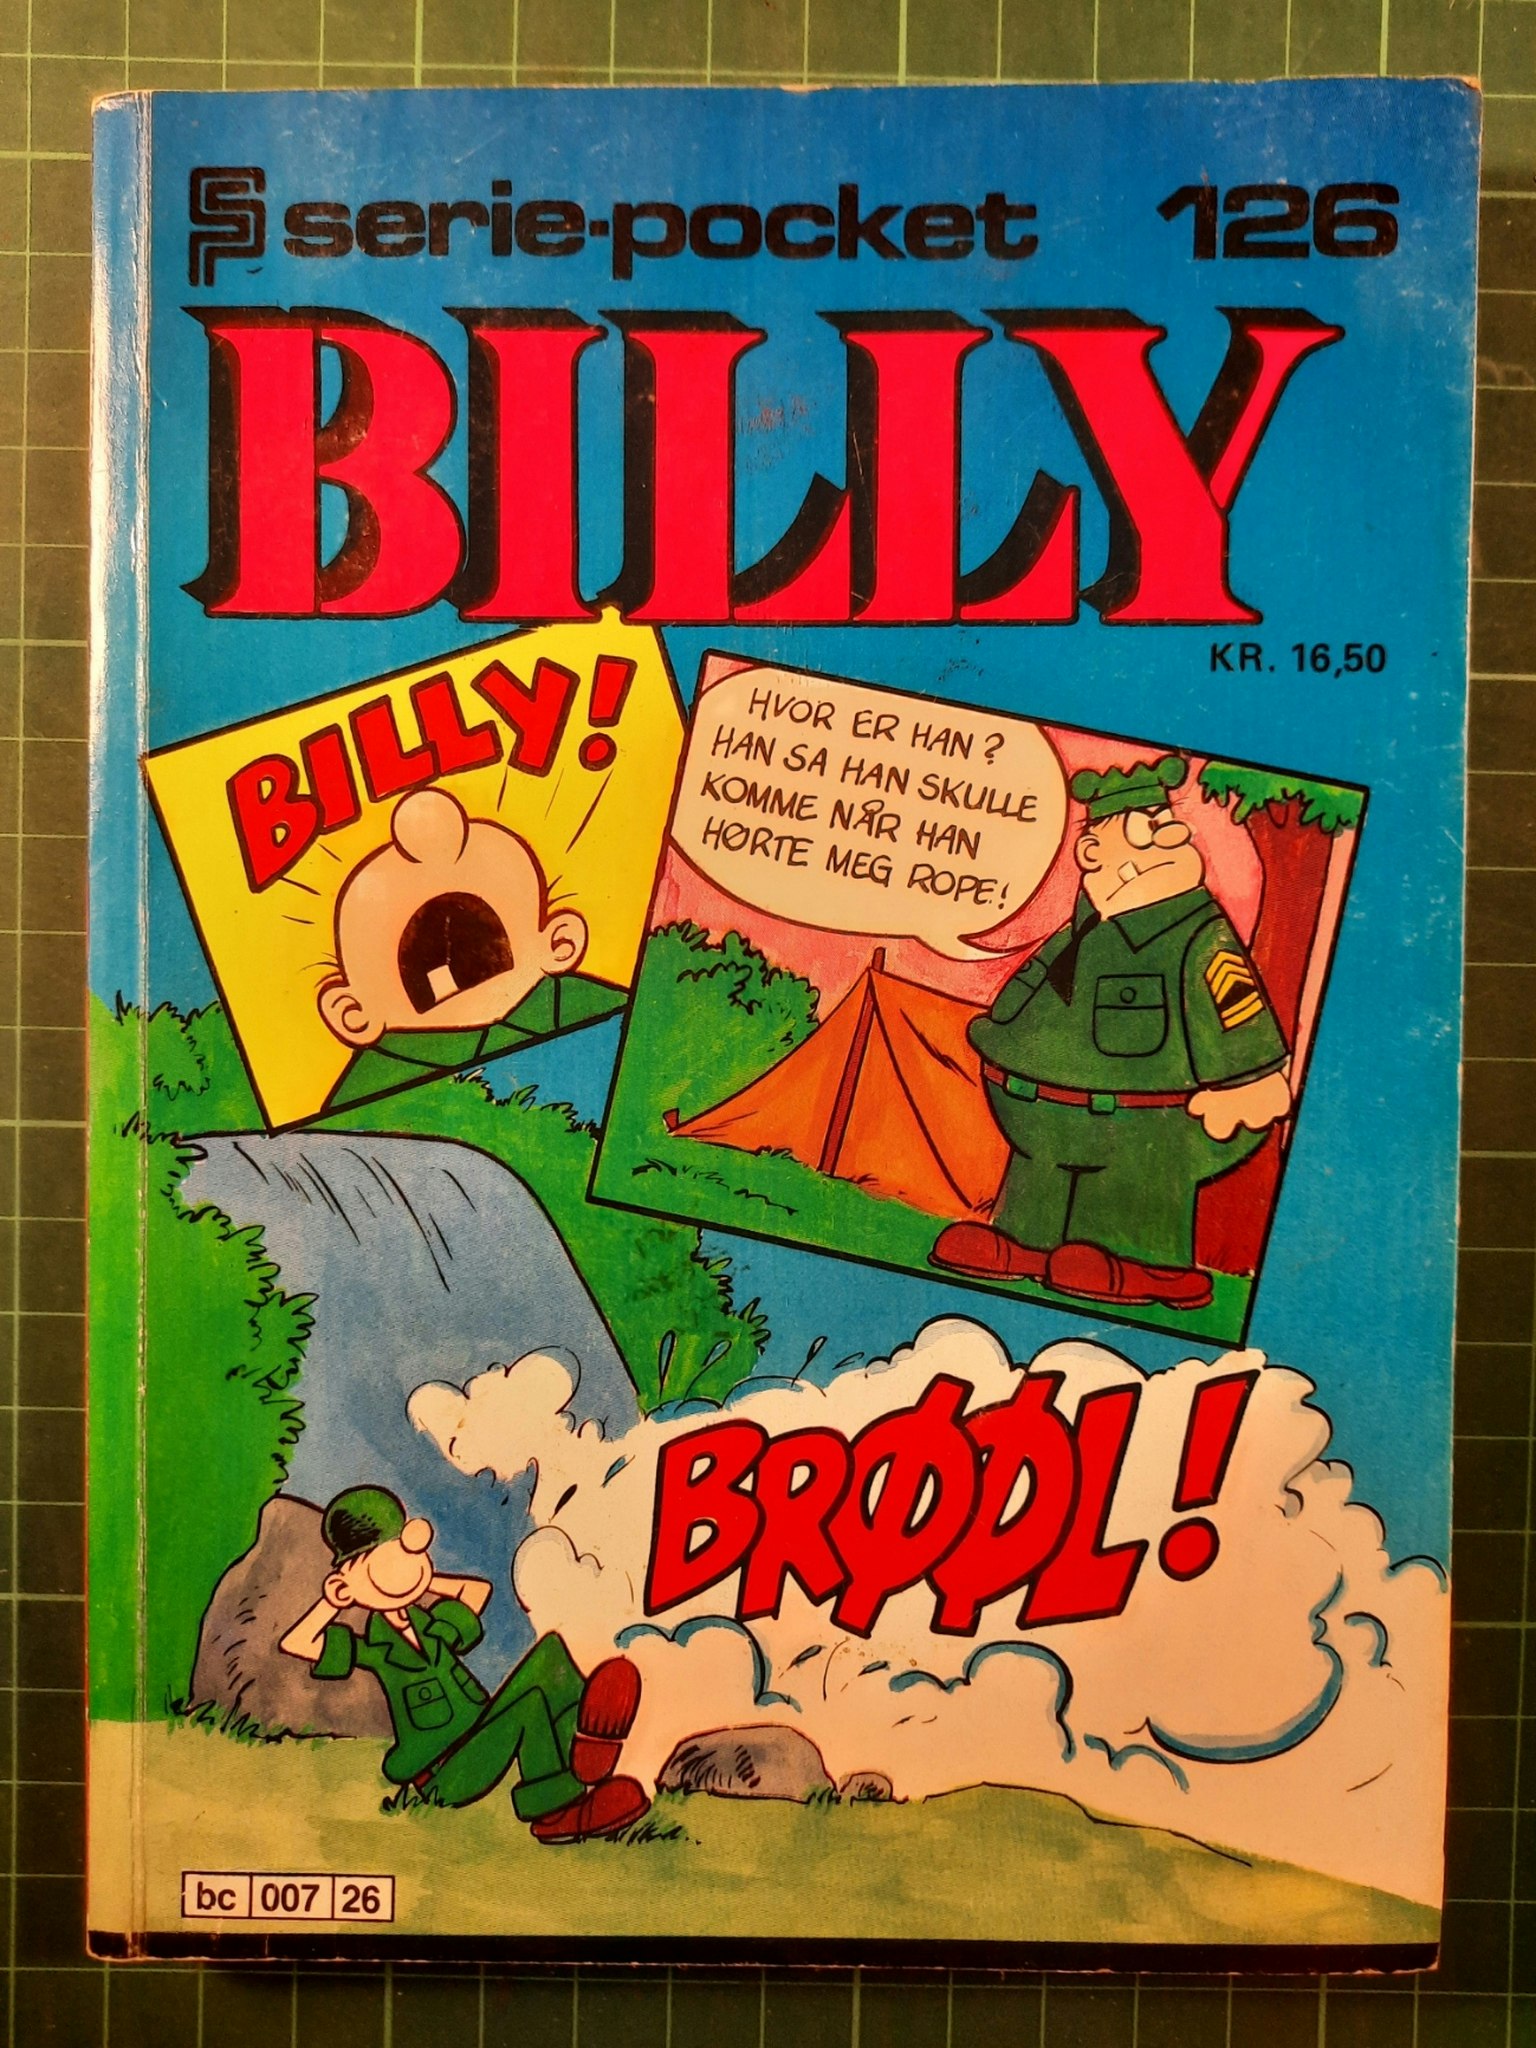 Serie-pocket 126 : Billy